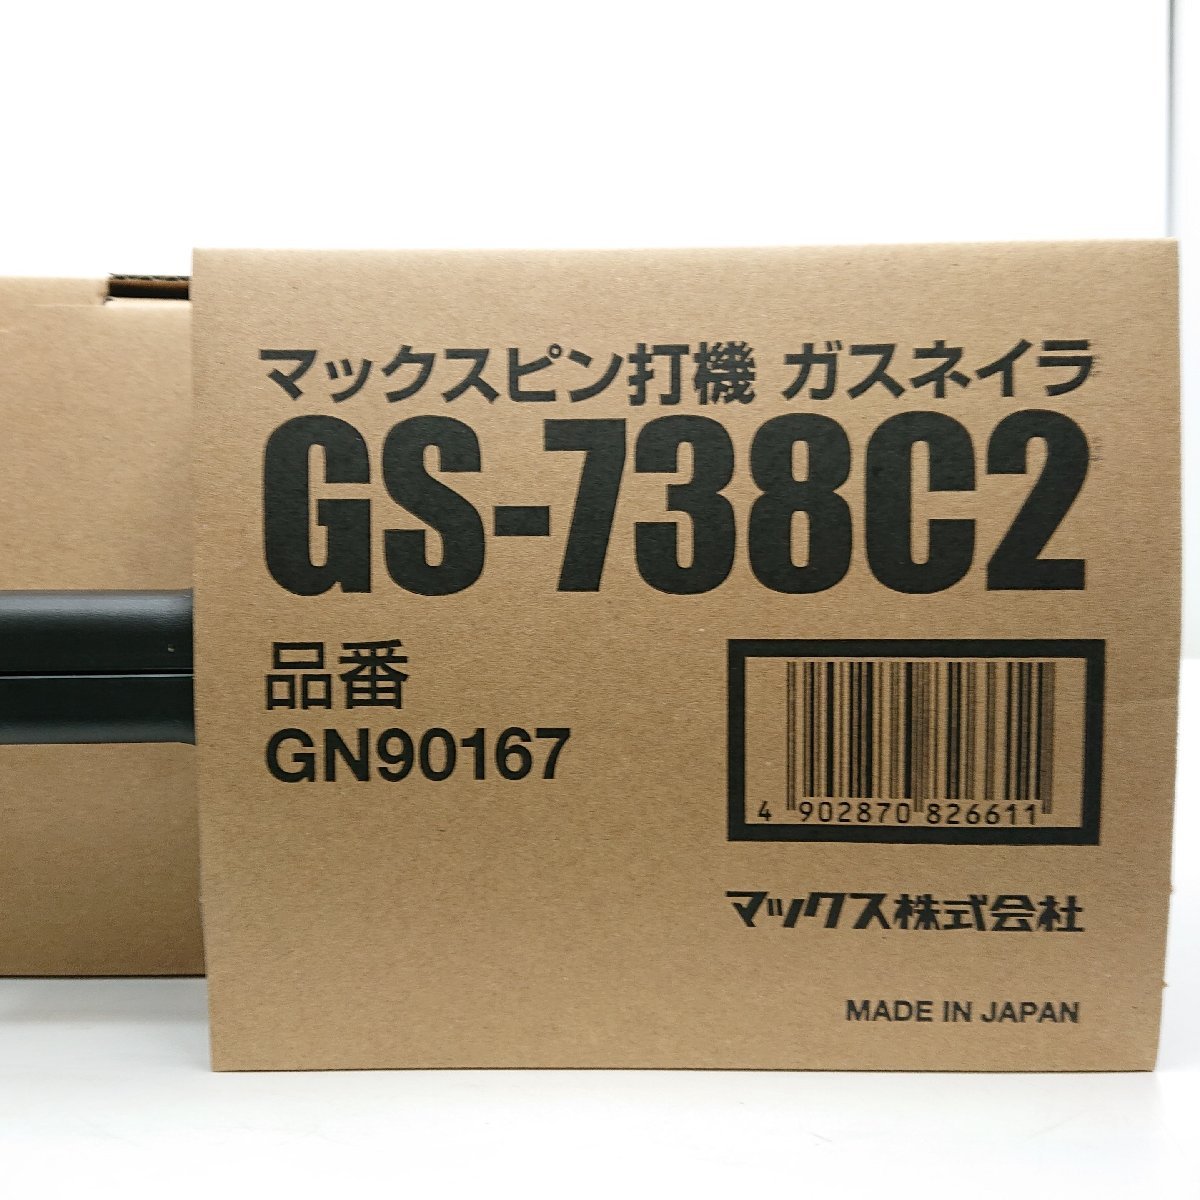 9304-010] MAX GS-738C2 ピン打機 ガスネイラ 【中古・未使用】 未開封